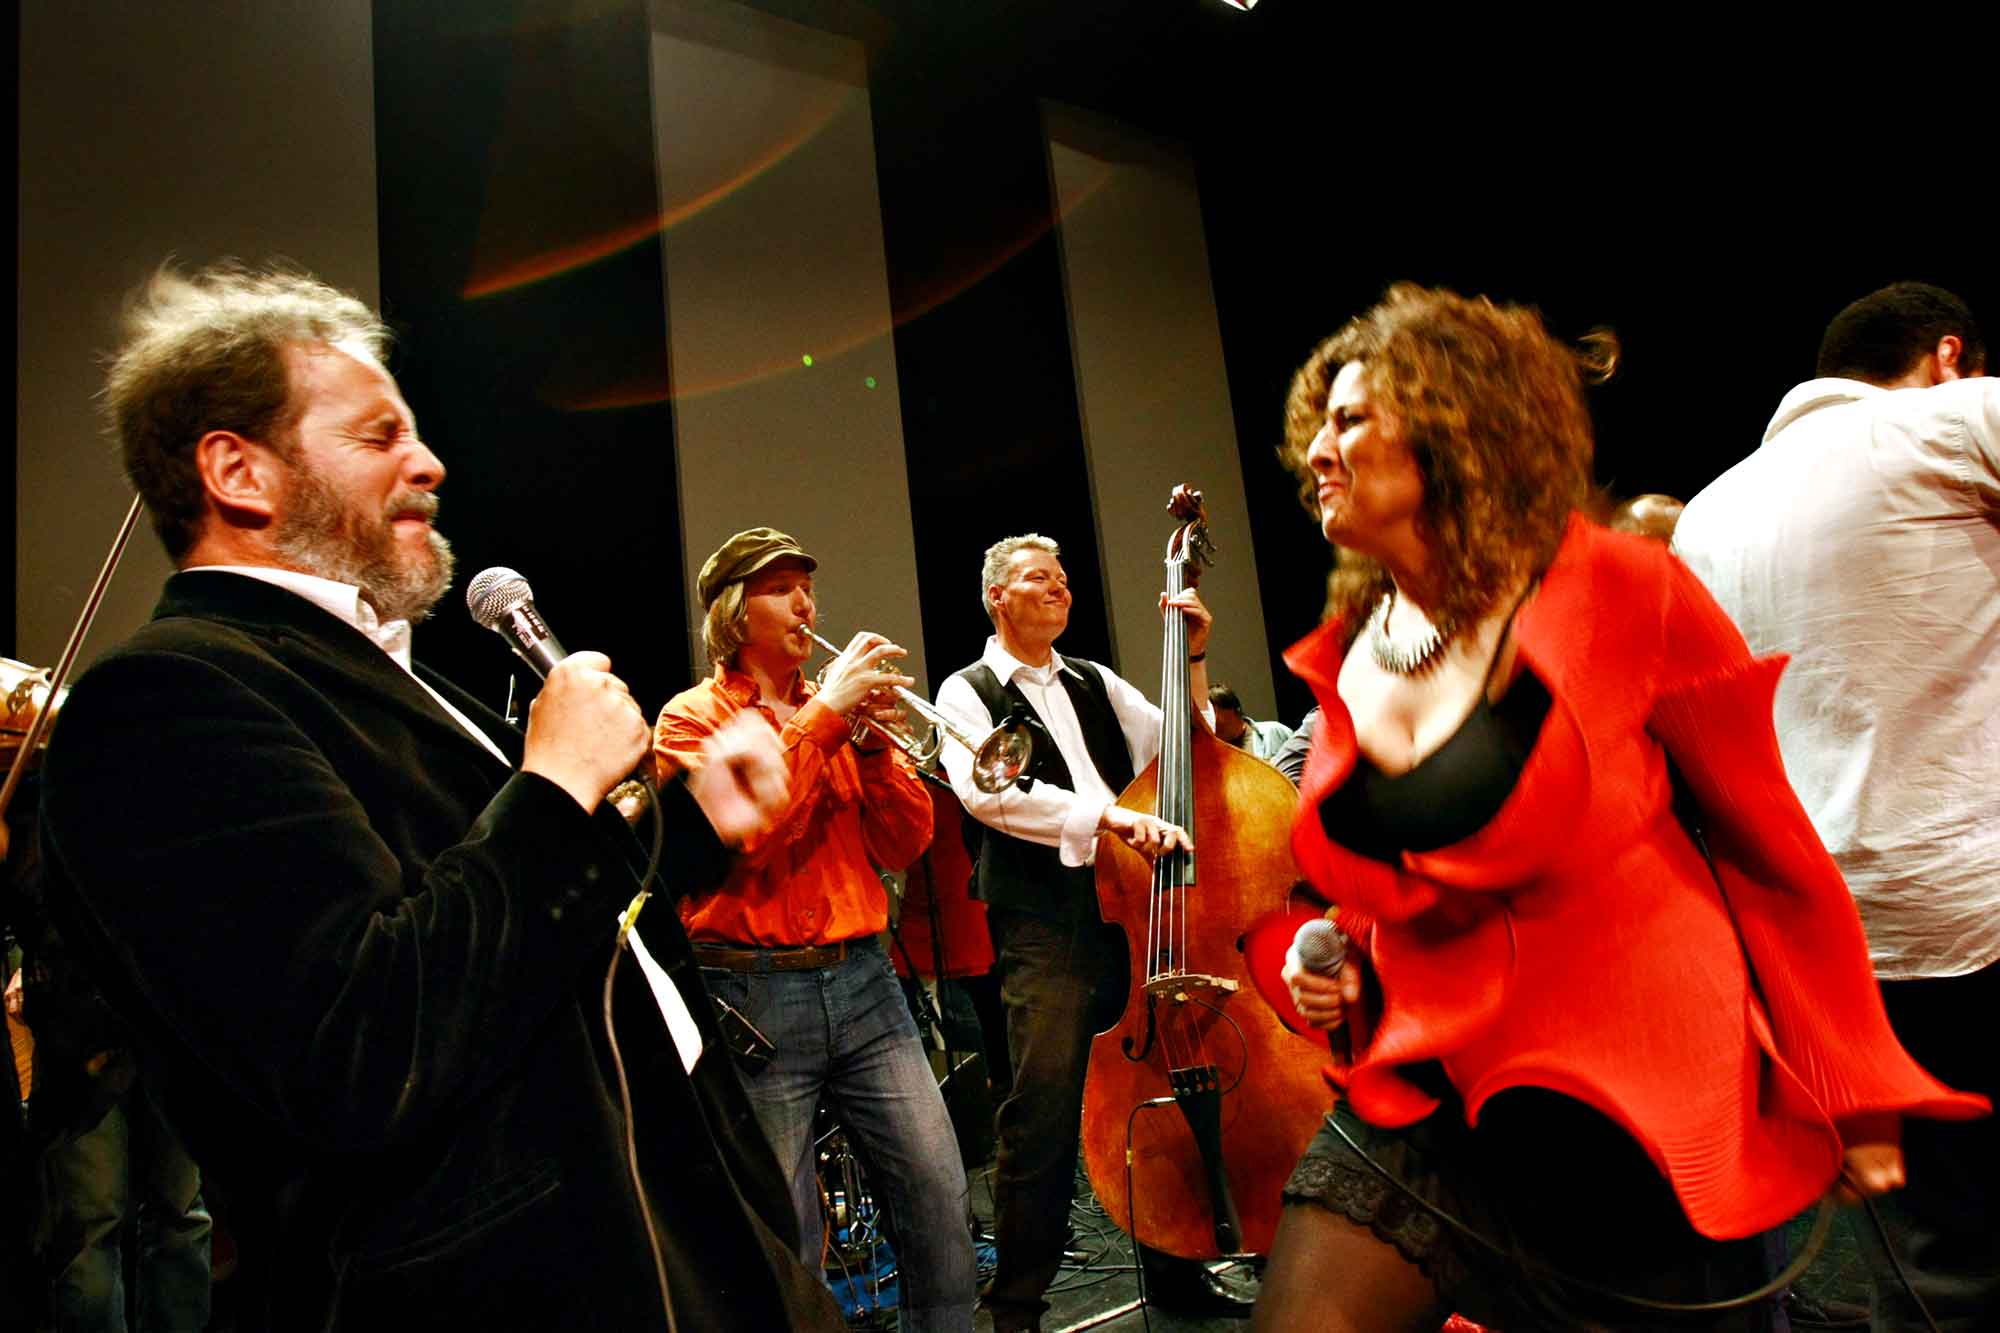 Oboisten og verdensmusikeren Henrik Goldschmidt optræder sammen med Channe Nussbaum i Tivoli